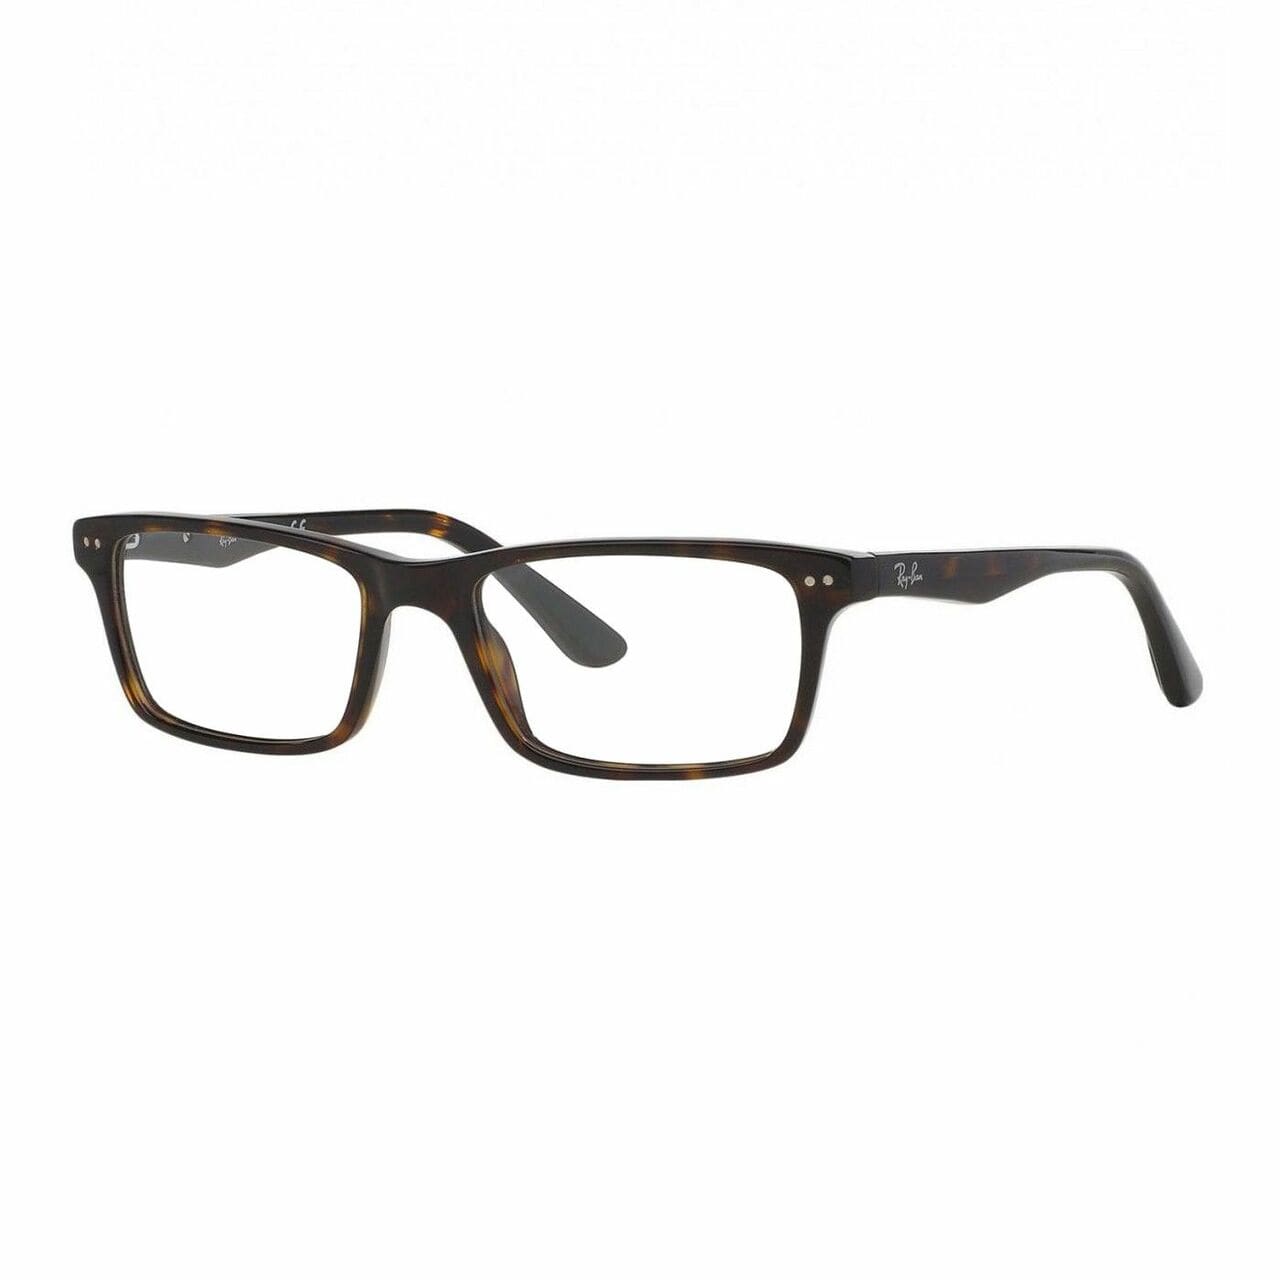 Ray-Ban RB5288-2012 Tortoise Rectangular Unisex Plastic Eyeglasses 8053672005431